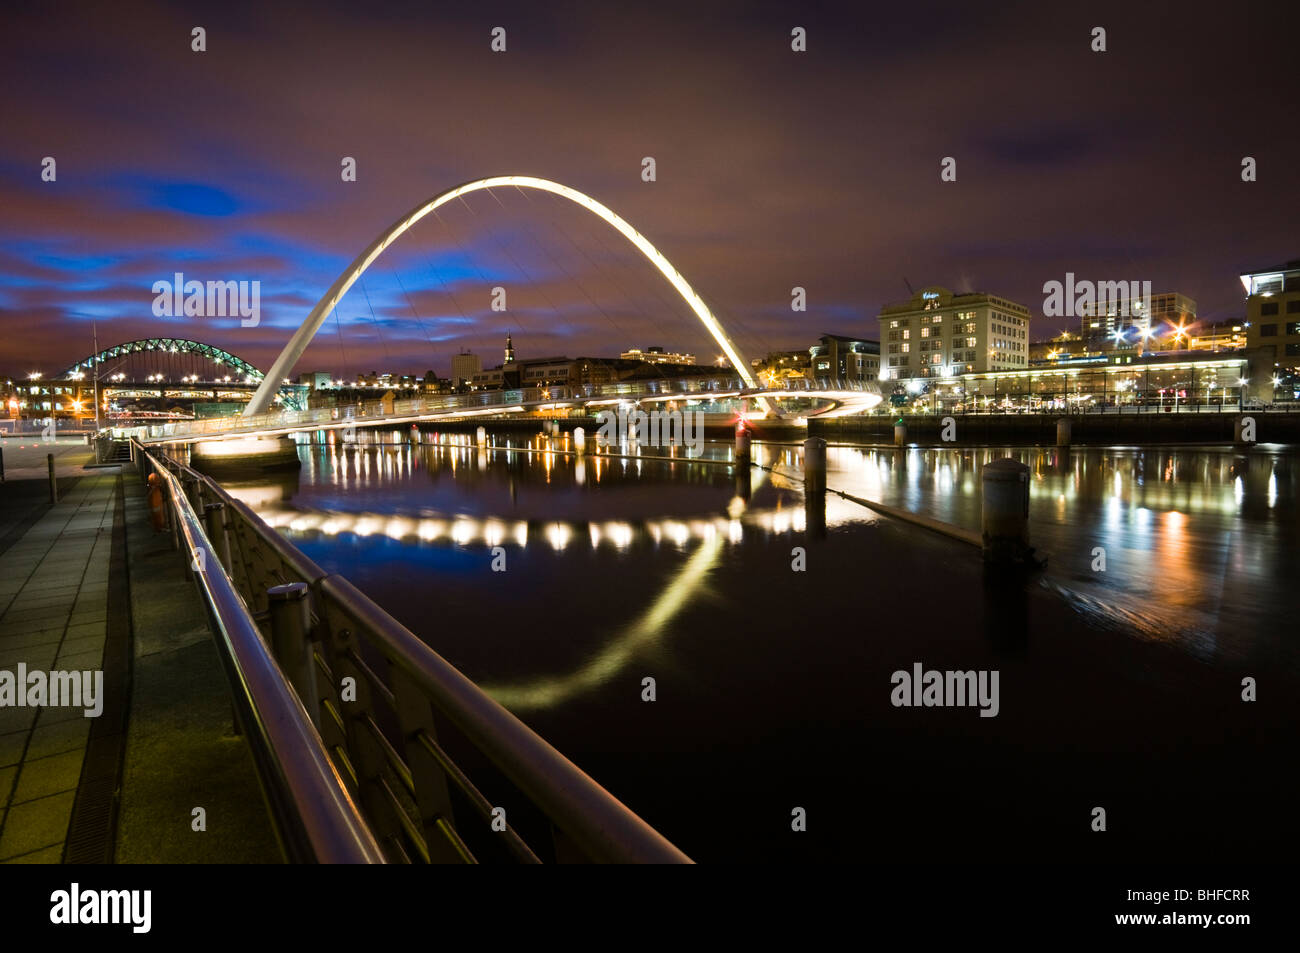 Vista de noche del milenio del puente que conecta la zona restaurada de Gateshead y Newcastle Foto de stock